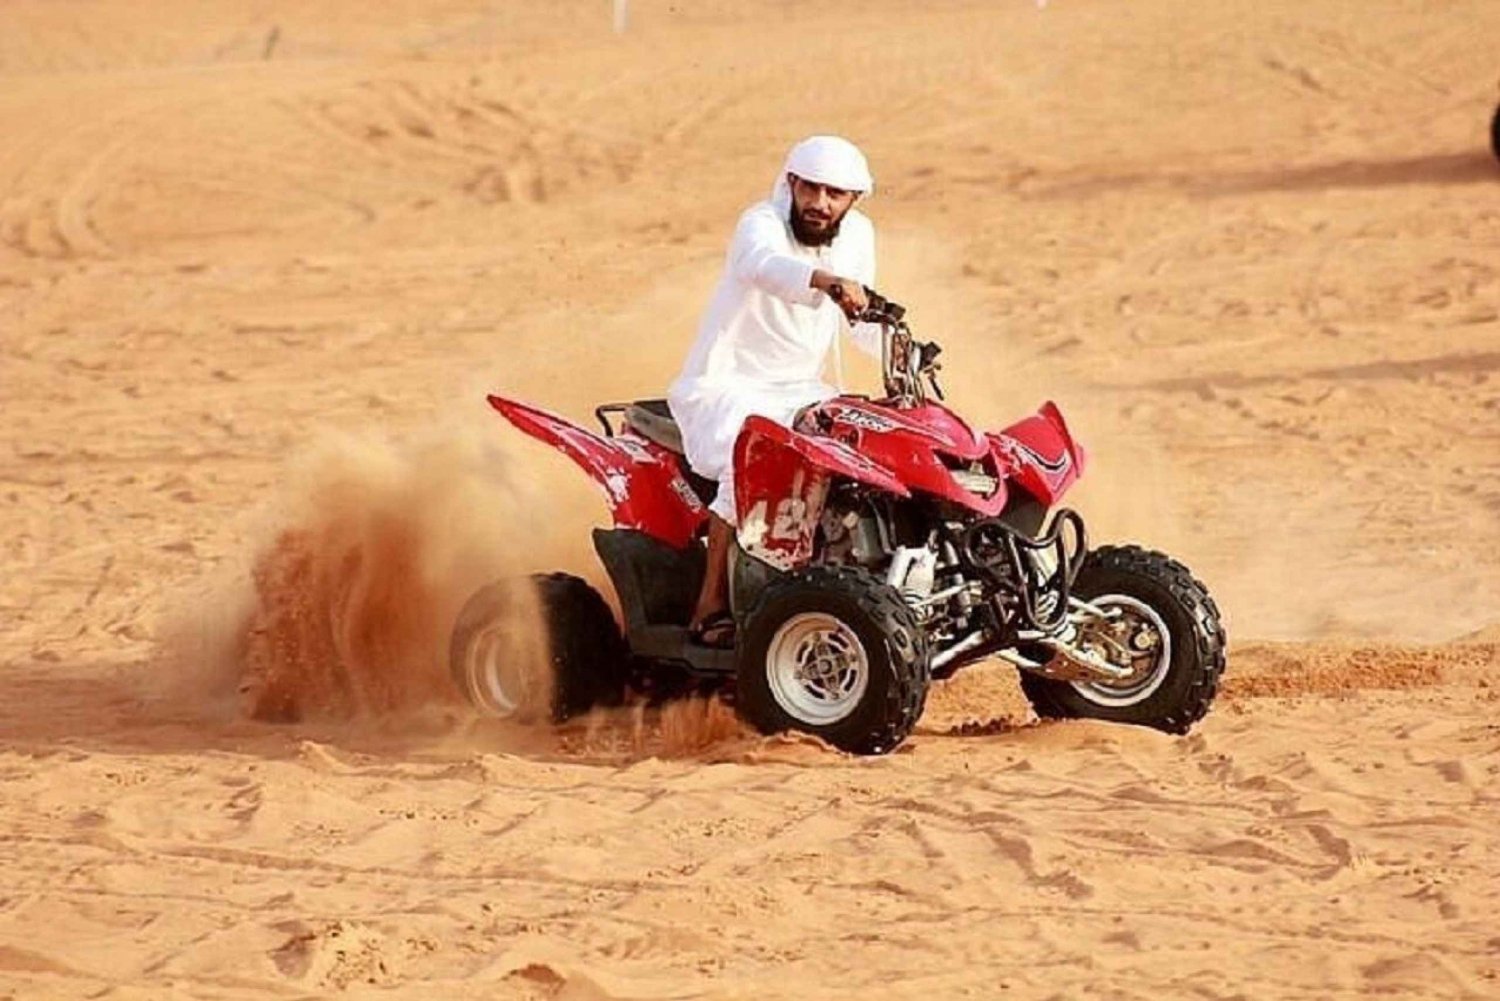 Dubai: Avond Quad rijden in de Rode Duinen, Dune Blast met BBQ